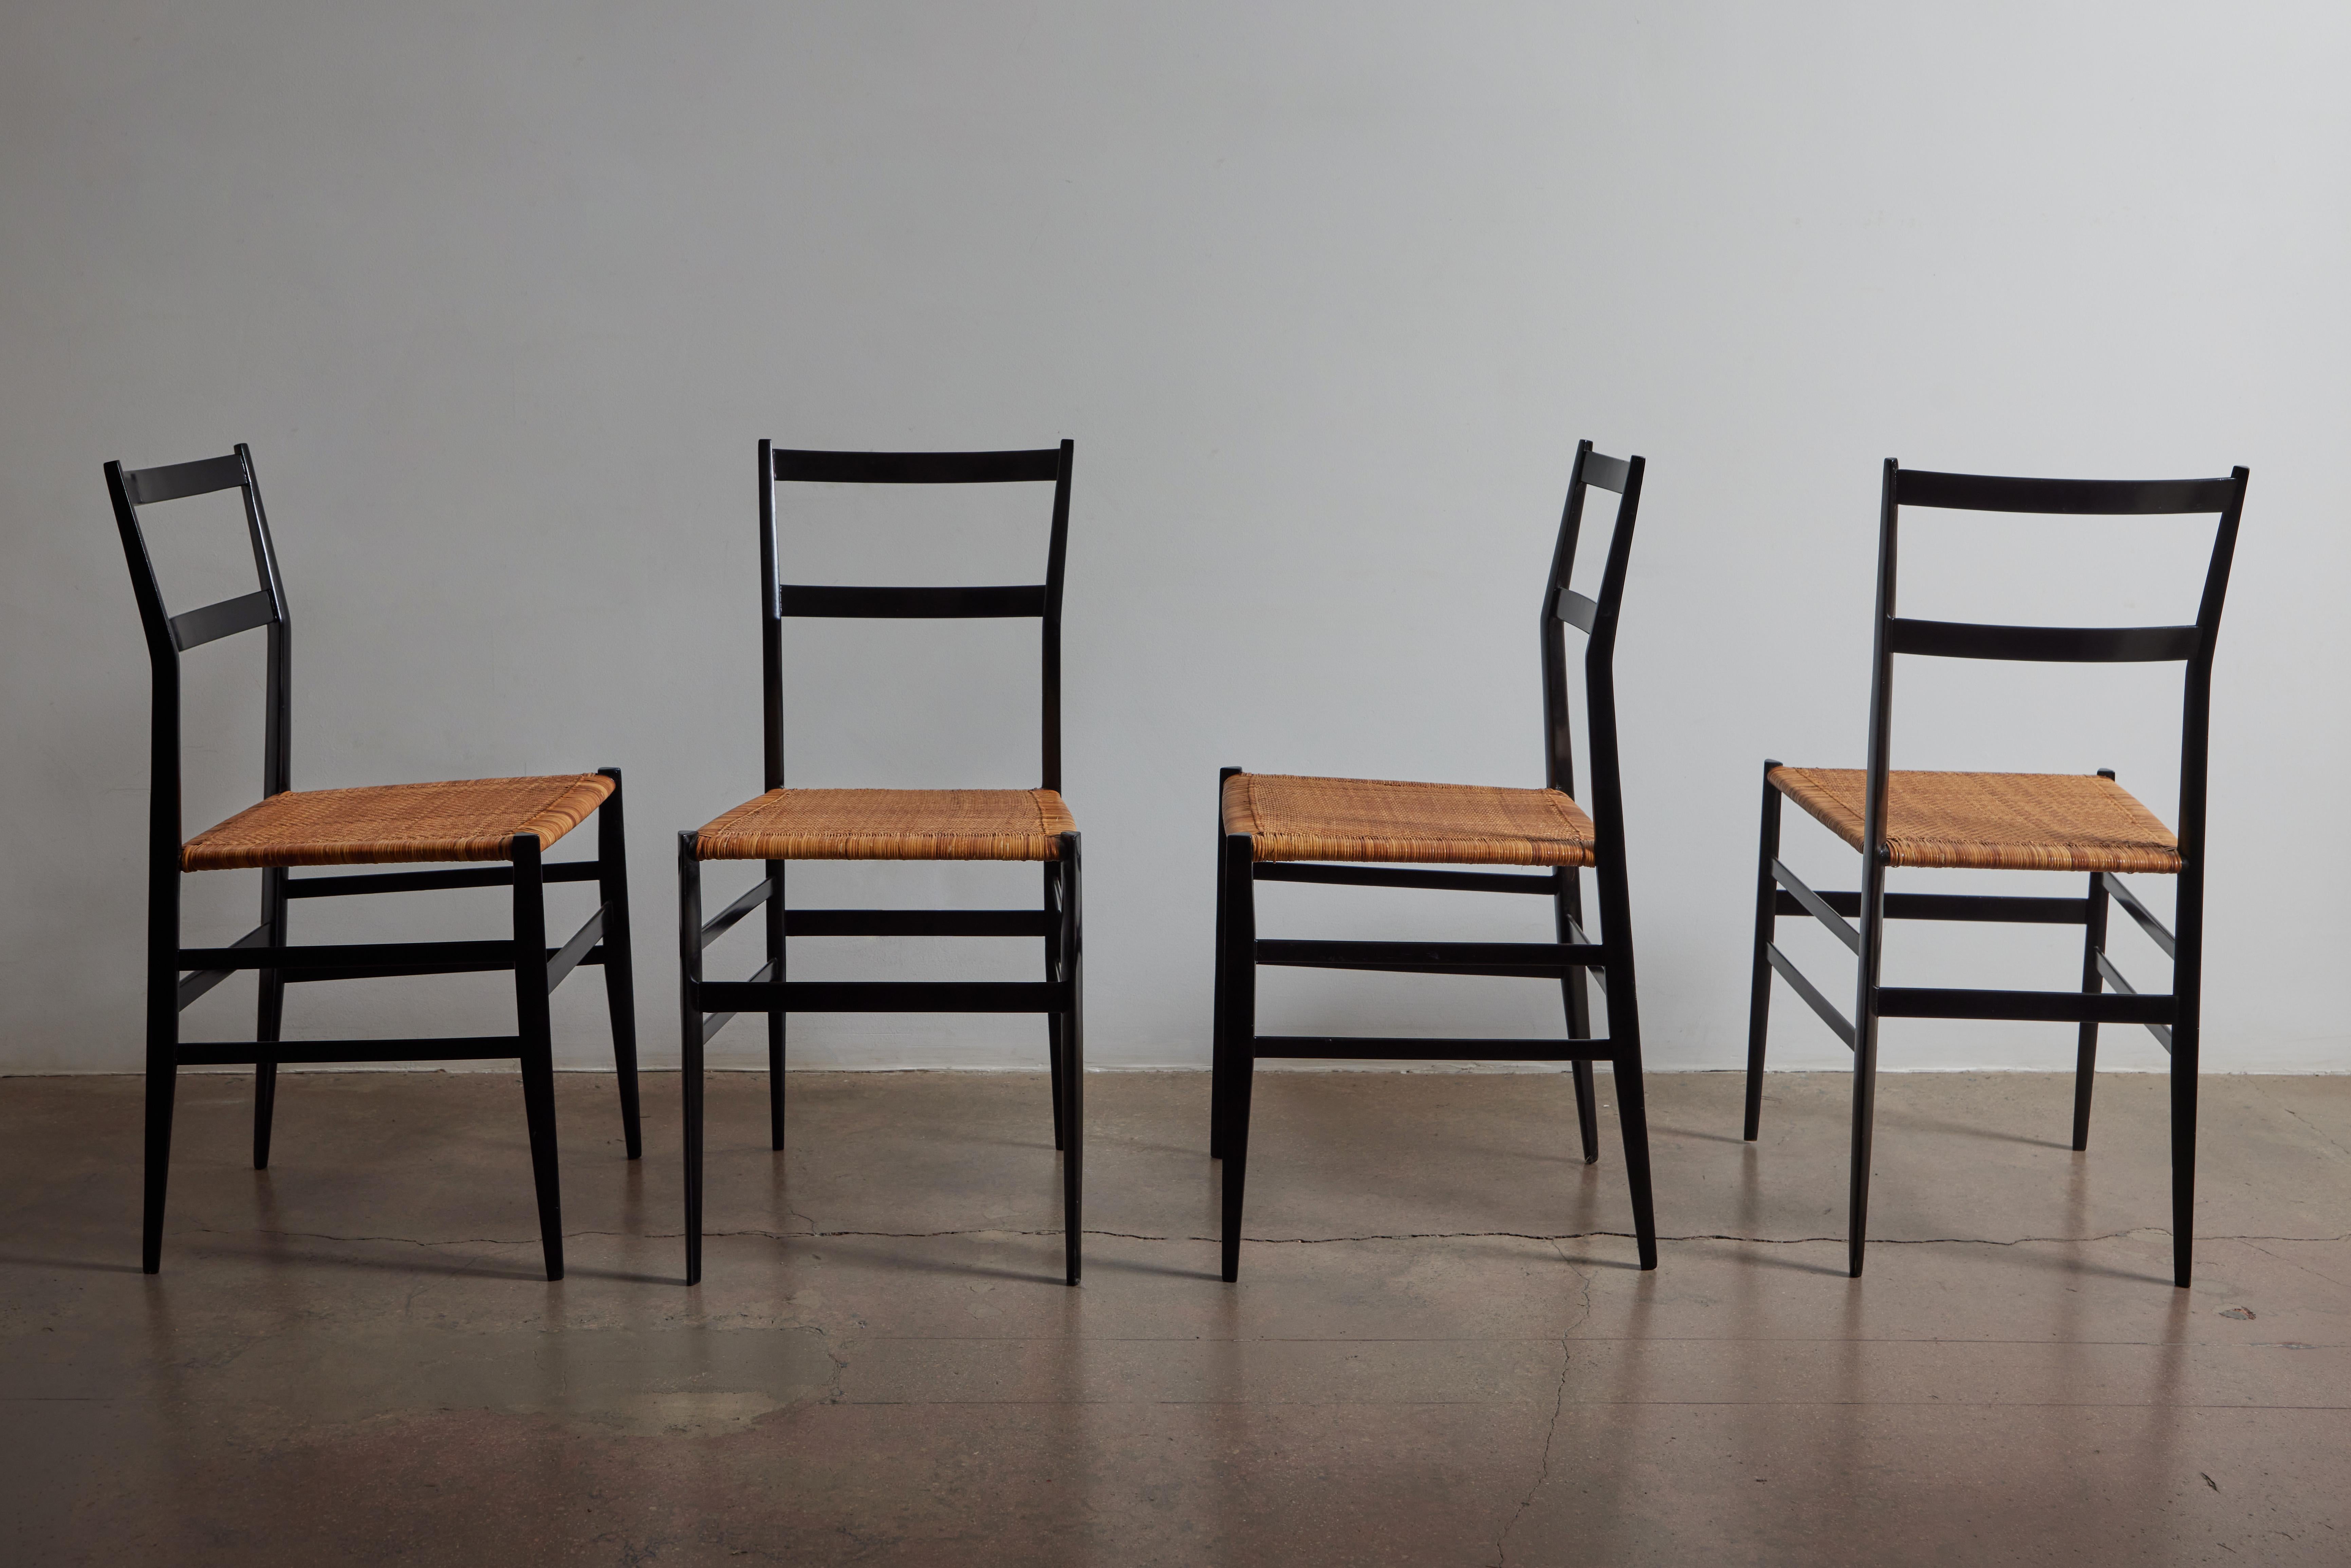 Ensemble historique de quatre chaises Superleggera de Gio Ponti avec cannage d'origine et structure en bois laqué noir. Fabriqué en Italie vers 1957.
